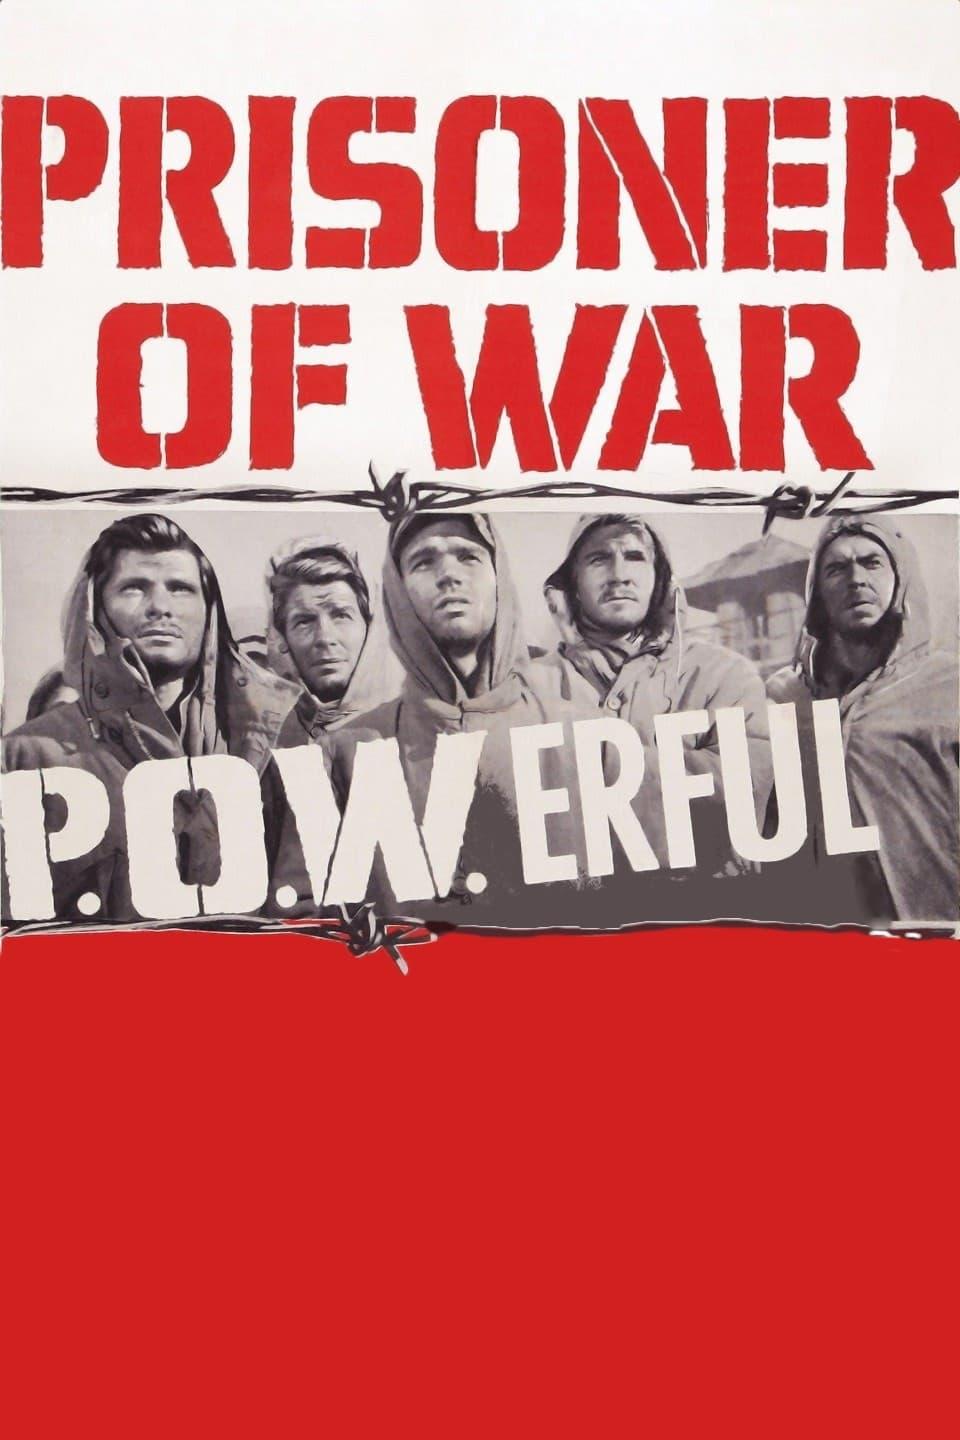 Prisoner of War poster